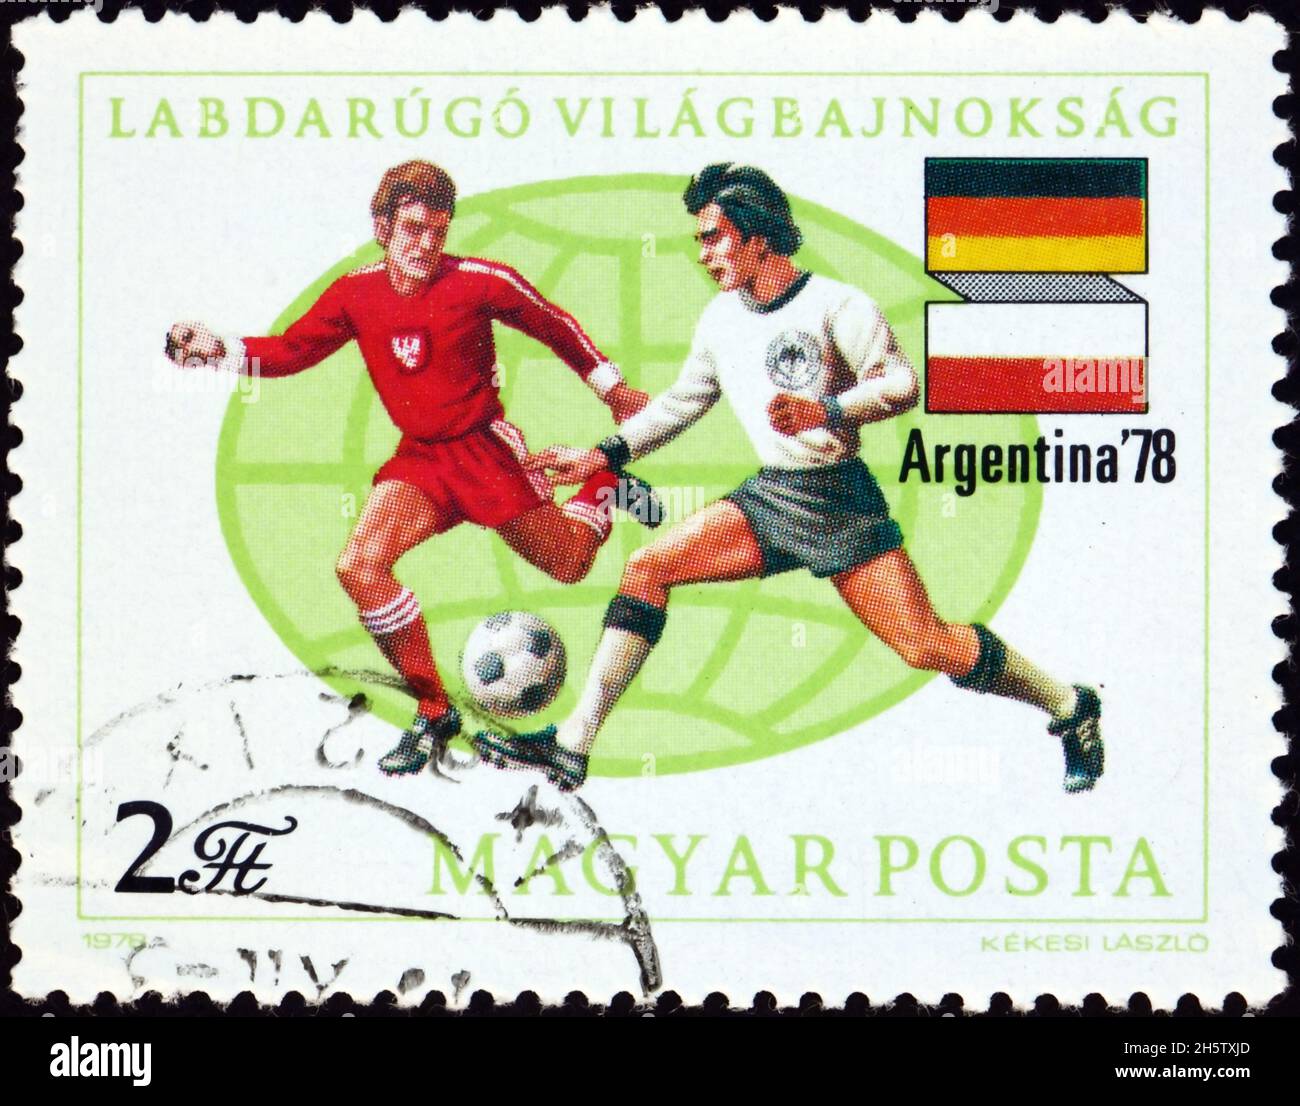 UNGHERIA - CIRCA 1978: Un francobollo stampato in Ungheria mostra i giocatori di calcio, bandiere della Germania occidentale e della Polonia, Argentina 78, 11th World Cup Soccer Champions Foto Stock